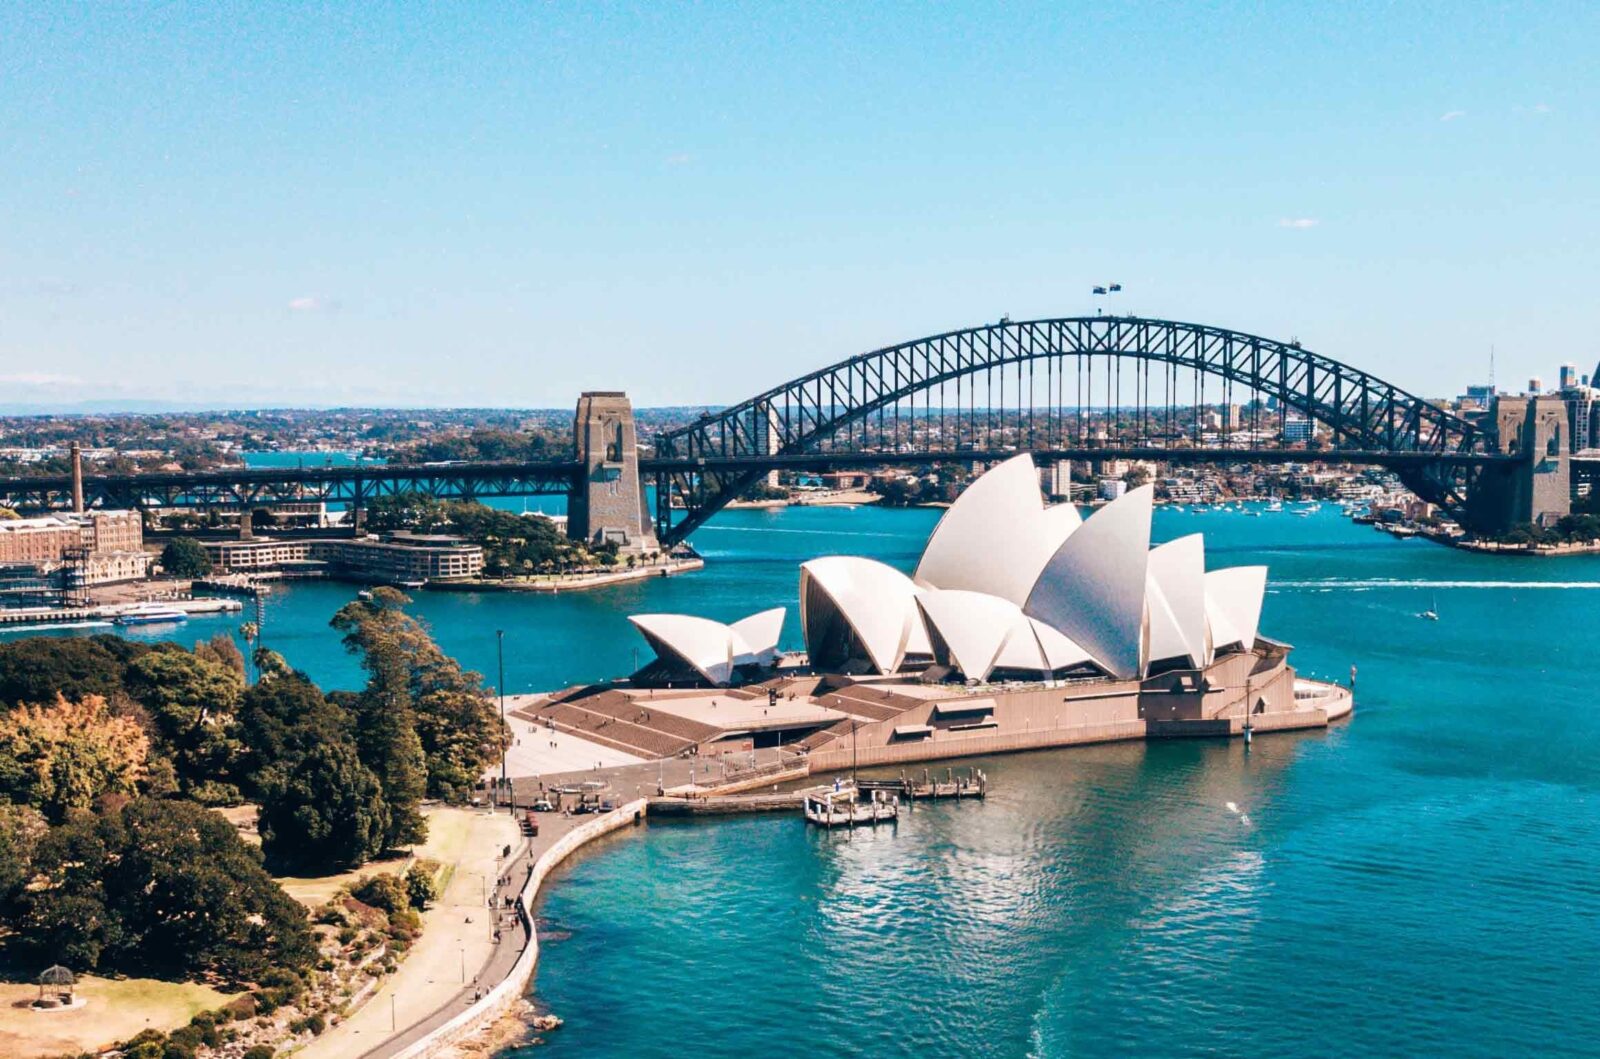 Sydney Harbour Opera House & Bridge